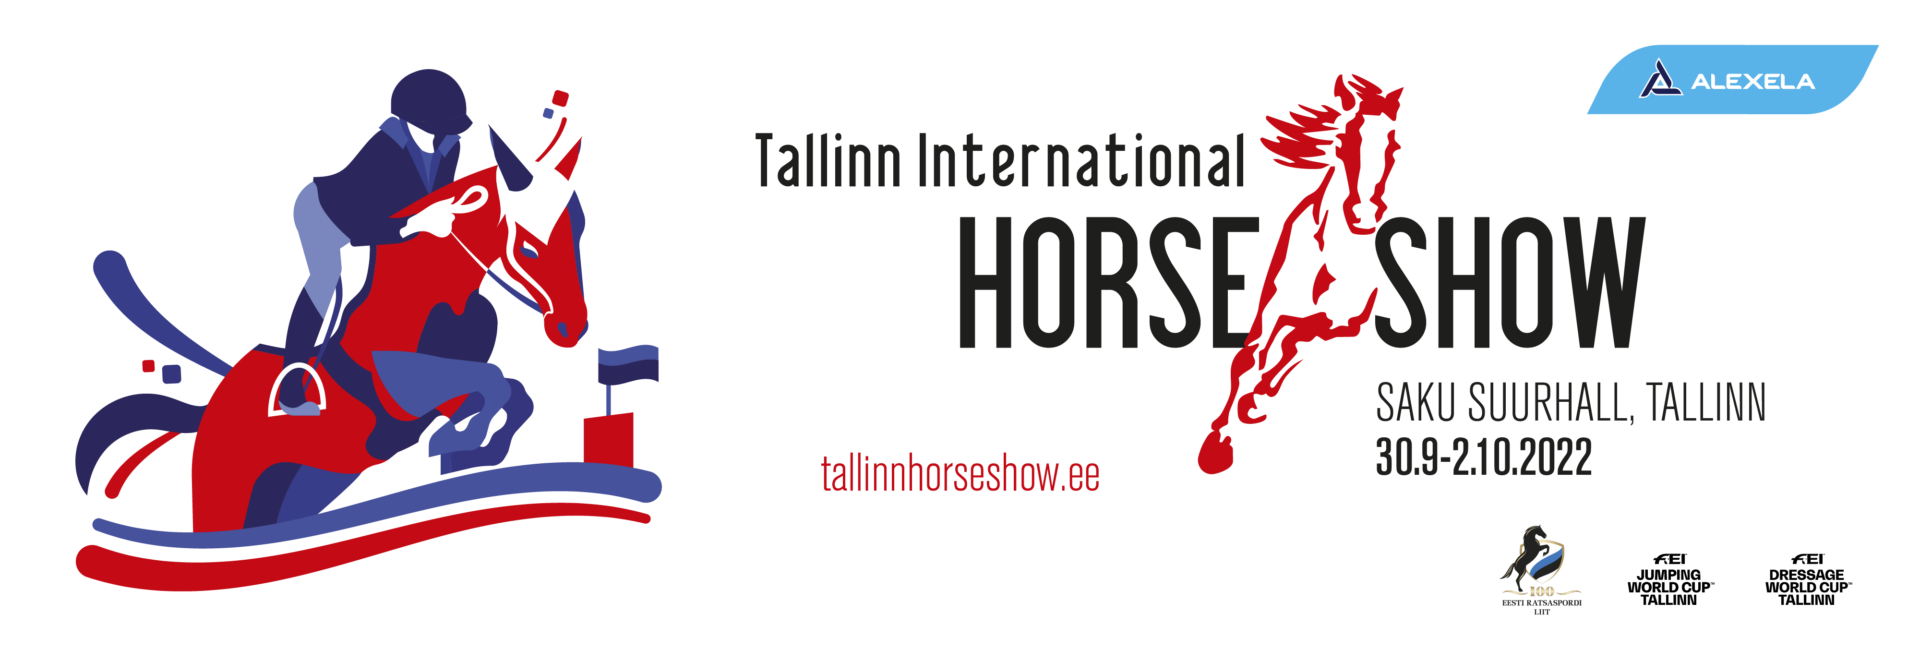 Tallinn International Horse Show 2021